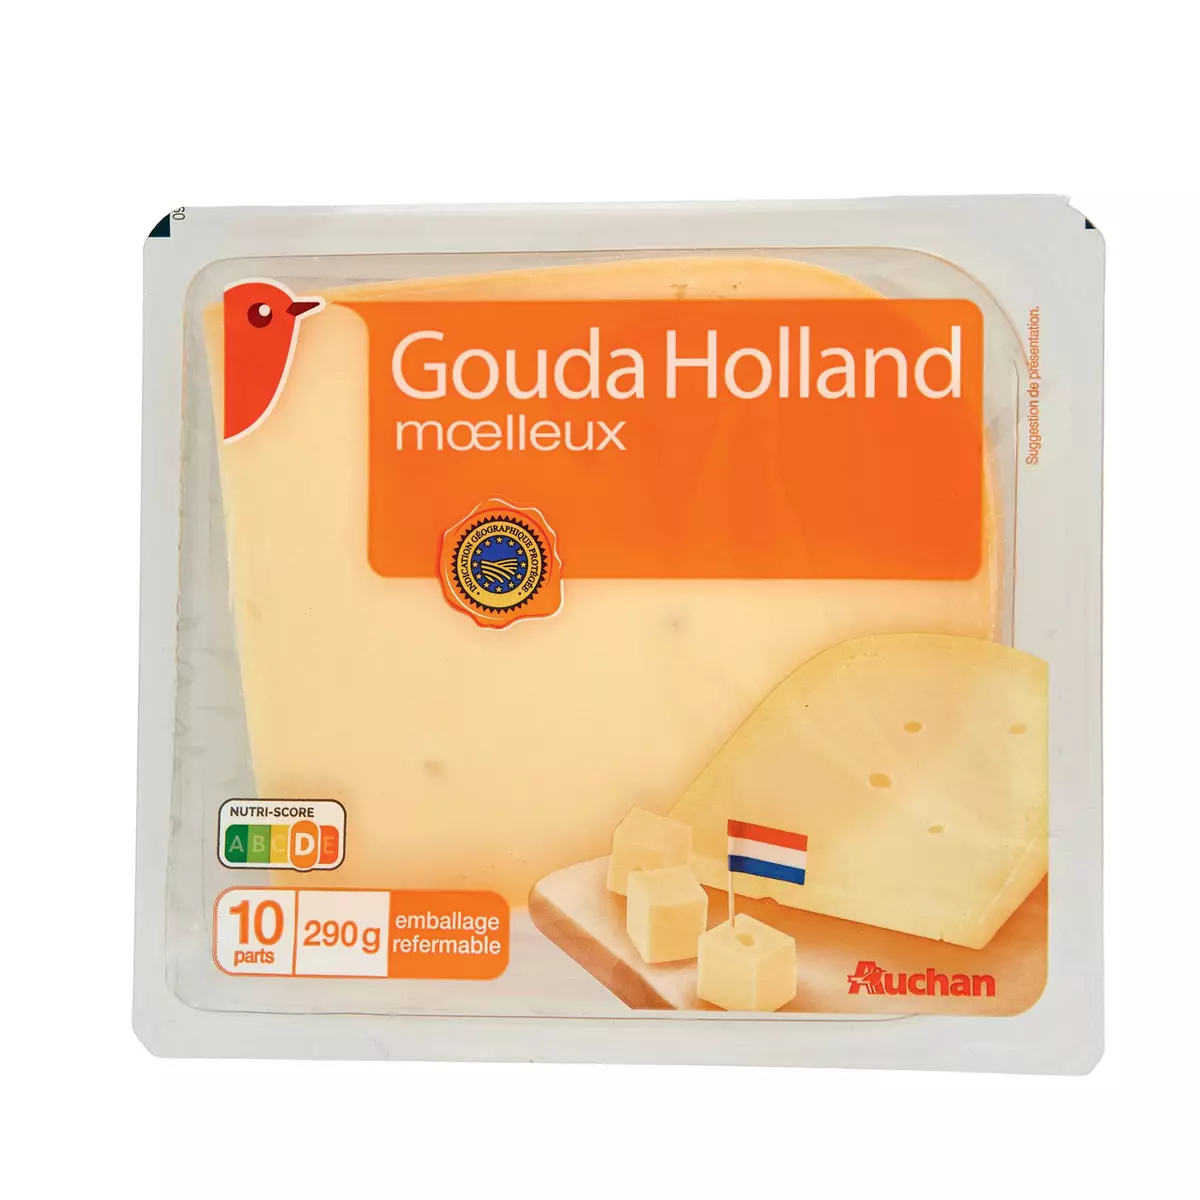 AUCHAN Gouda Holland moelleux IGP 290g